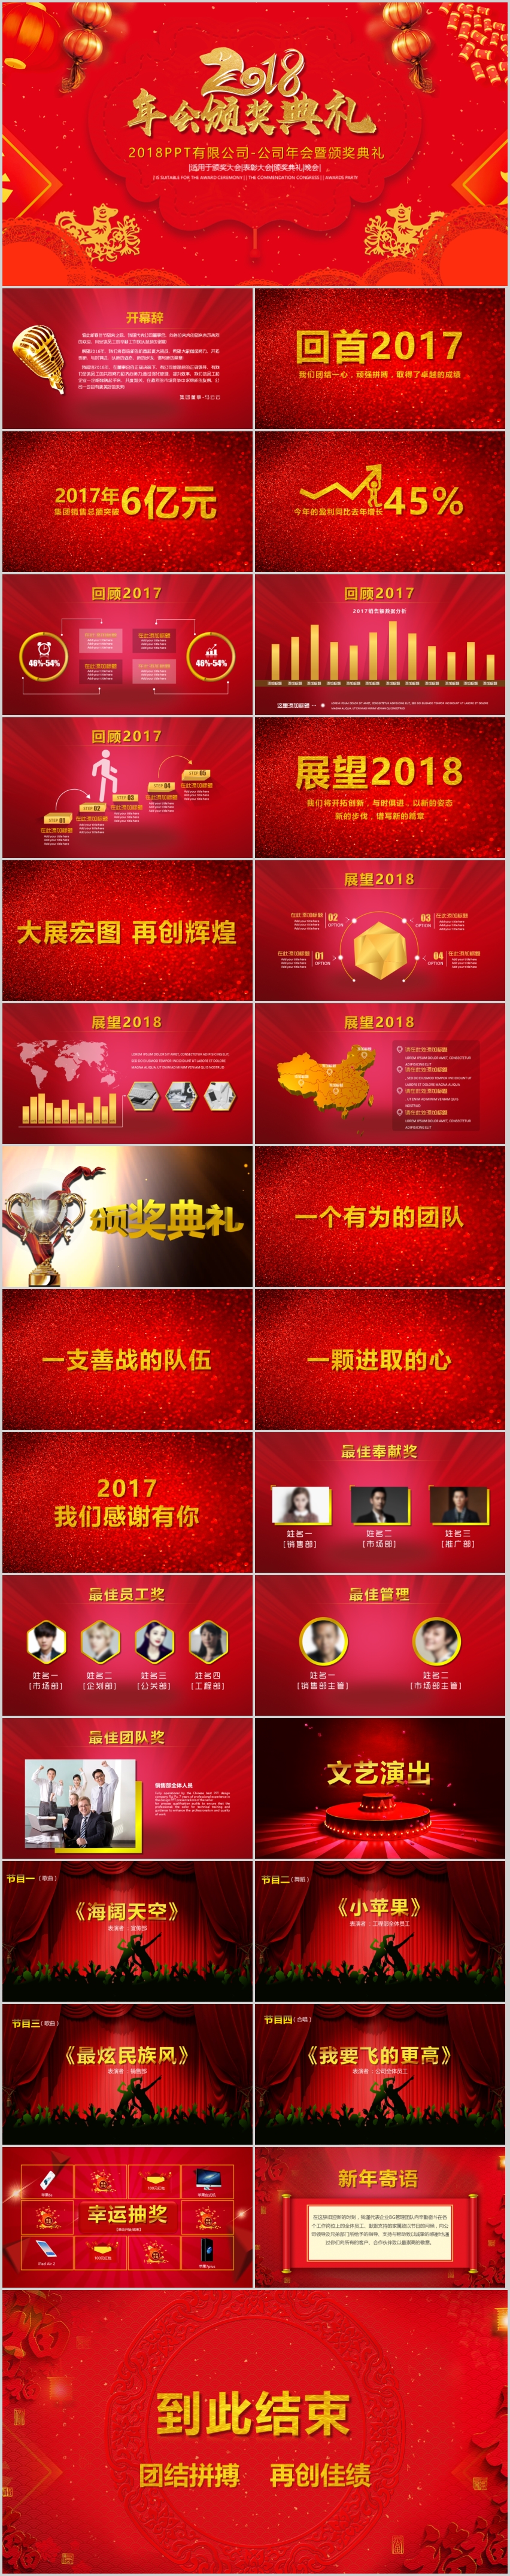 【叶雪PPT】2018红色年会颁奖大气中国红PPT模板